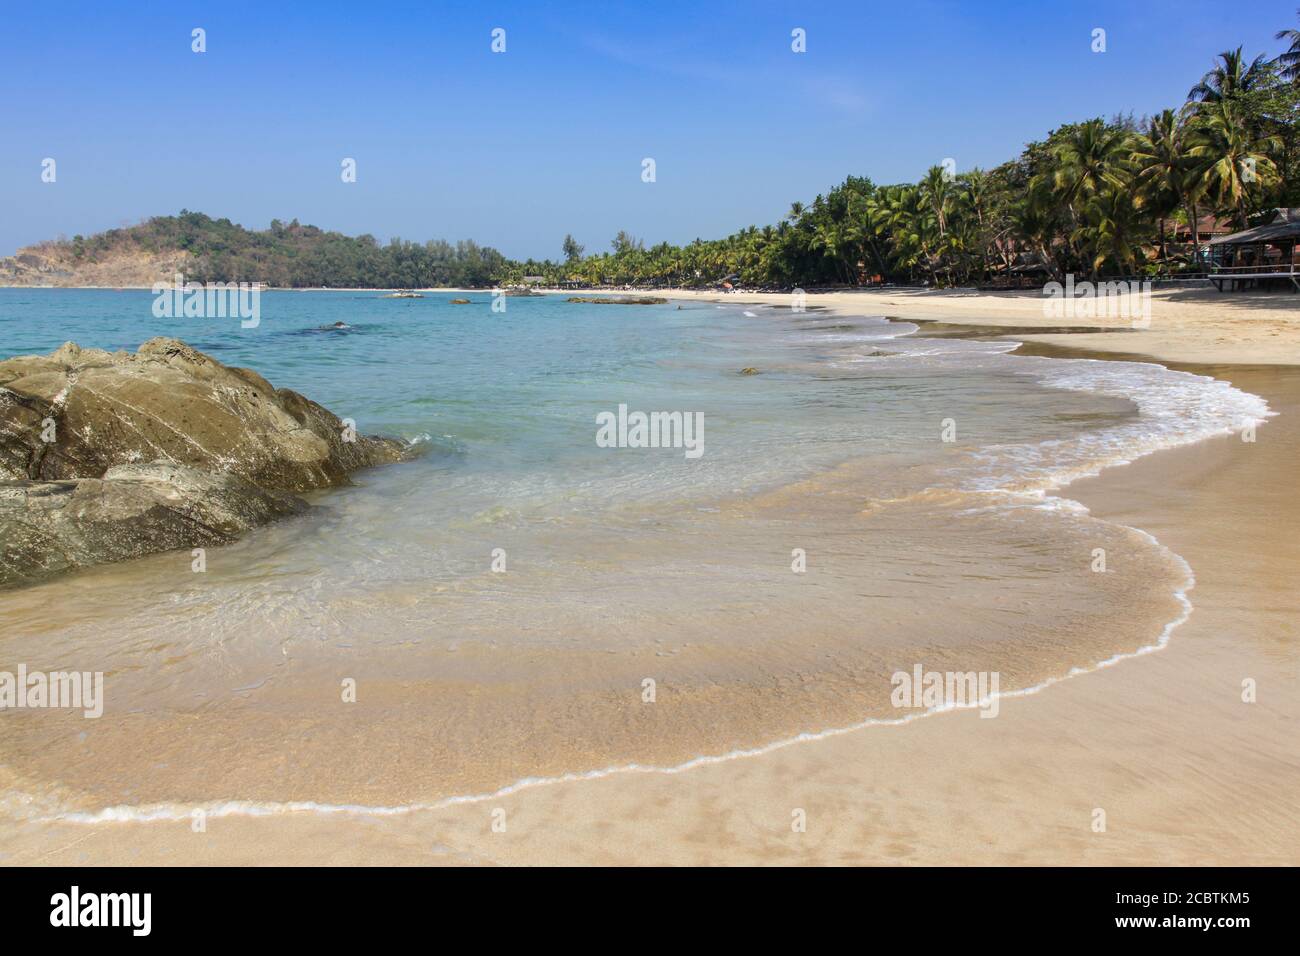 Ngapali Beach im Westen von Myanmar (Burma) ist ein tropisches Resort Lage. Der weiße, palmengesäumte Sandstrand ist ruhig und hervorragend zum Schwimmen geeignet. Stockfoto